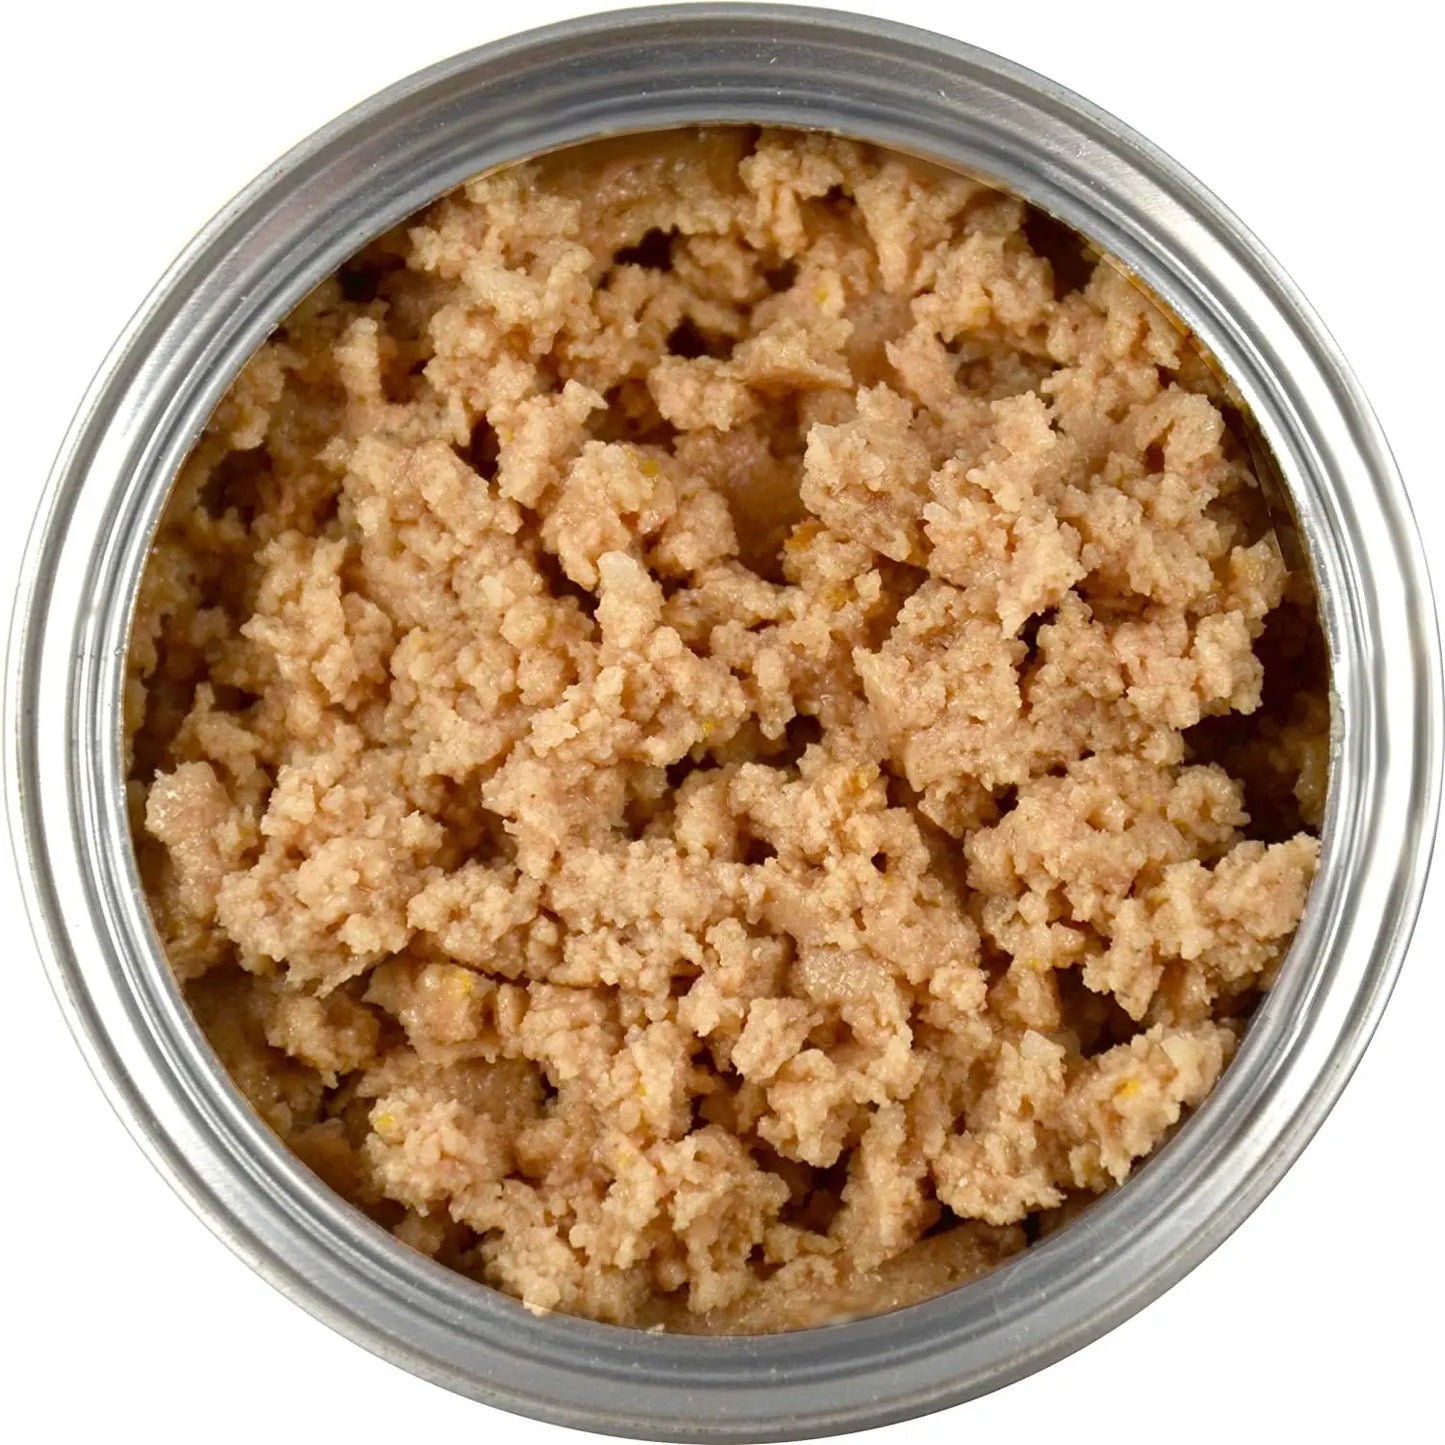 Evanger's Grain-Free Sweet Potato Canned Dog & Cat Food 24ea/6 oz, Evanger's